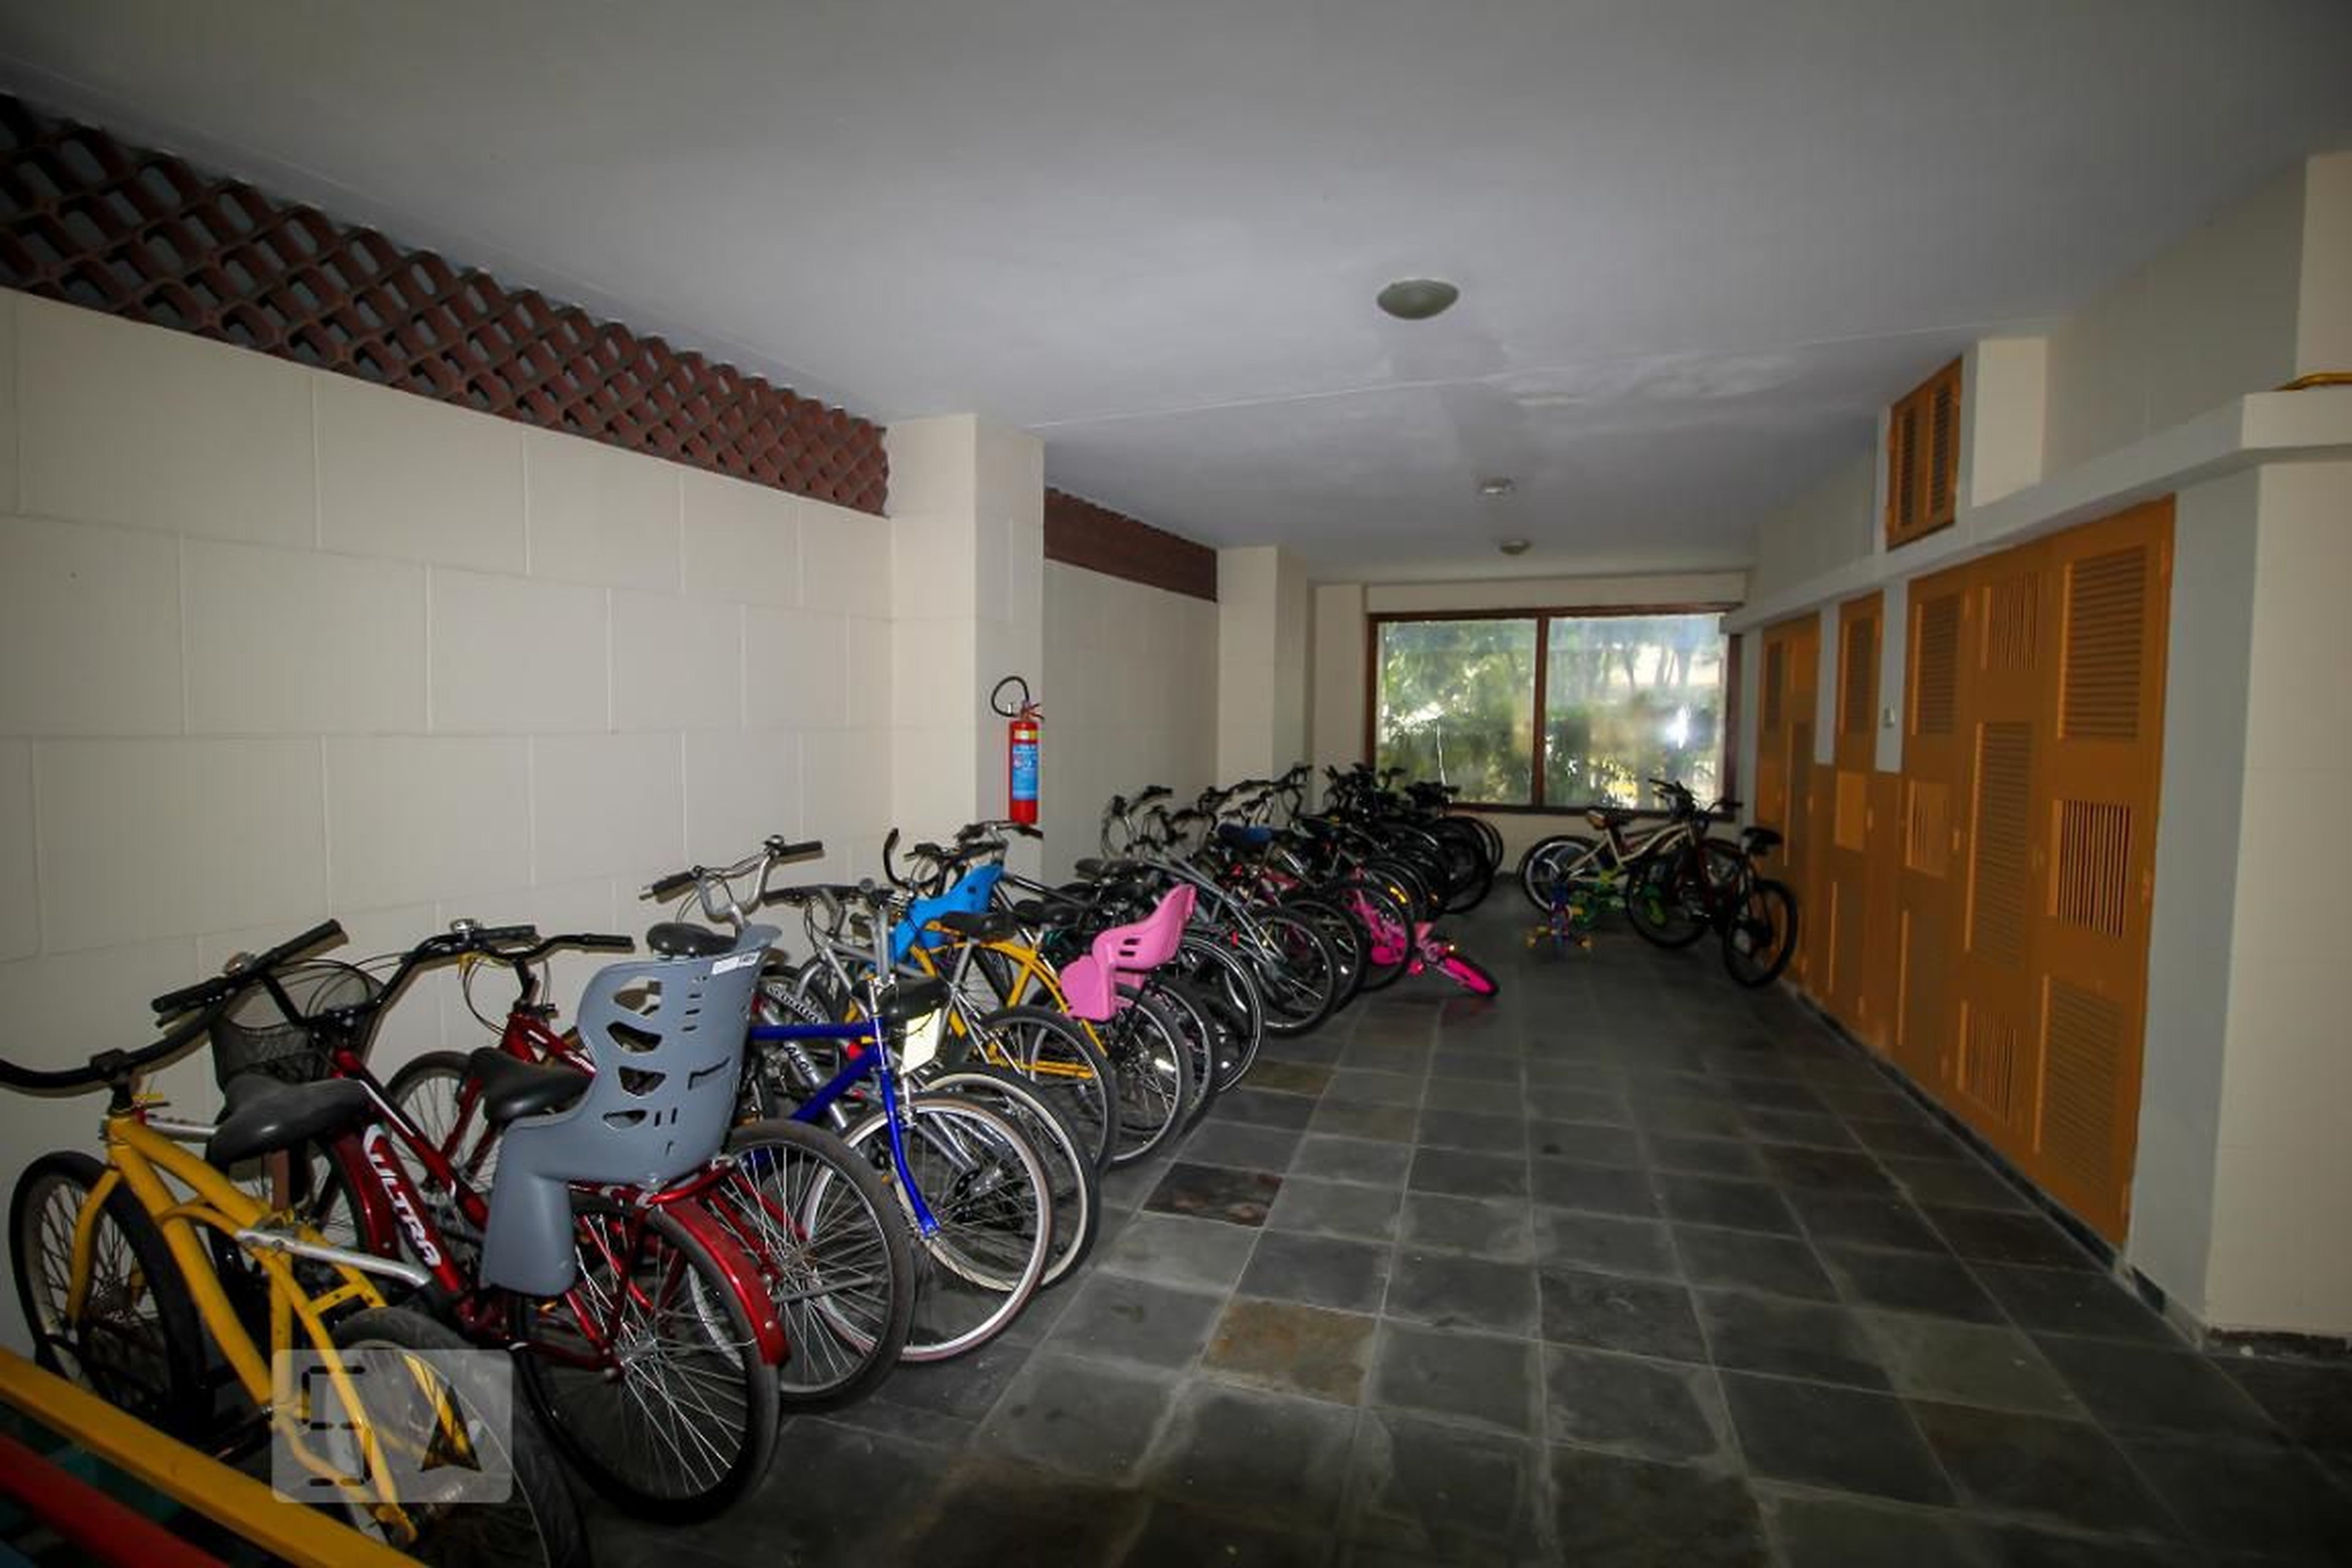 Bicicletario - Edifício Irai